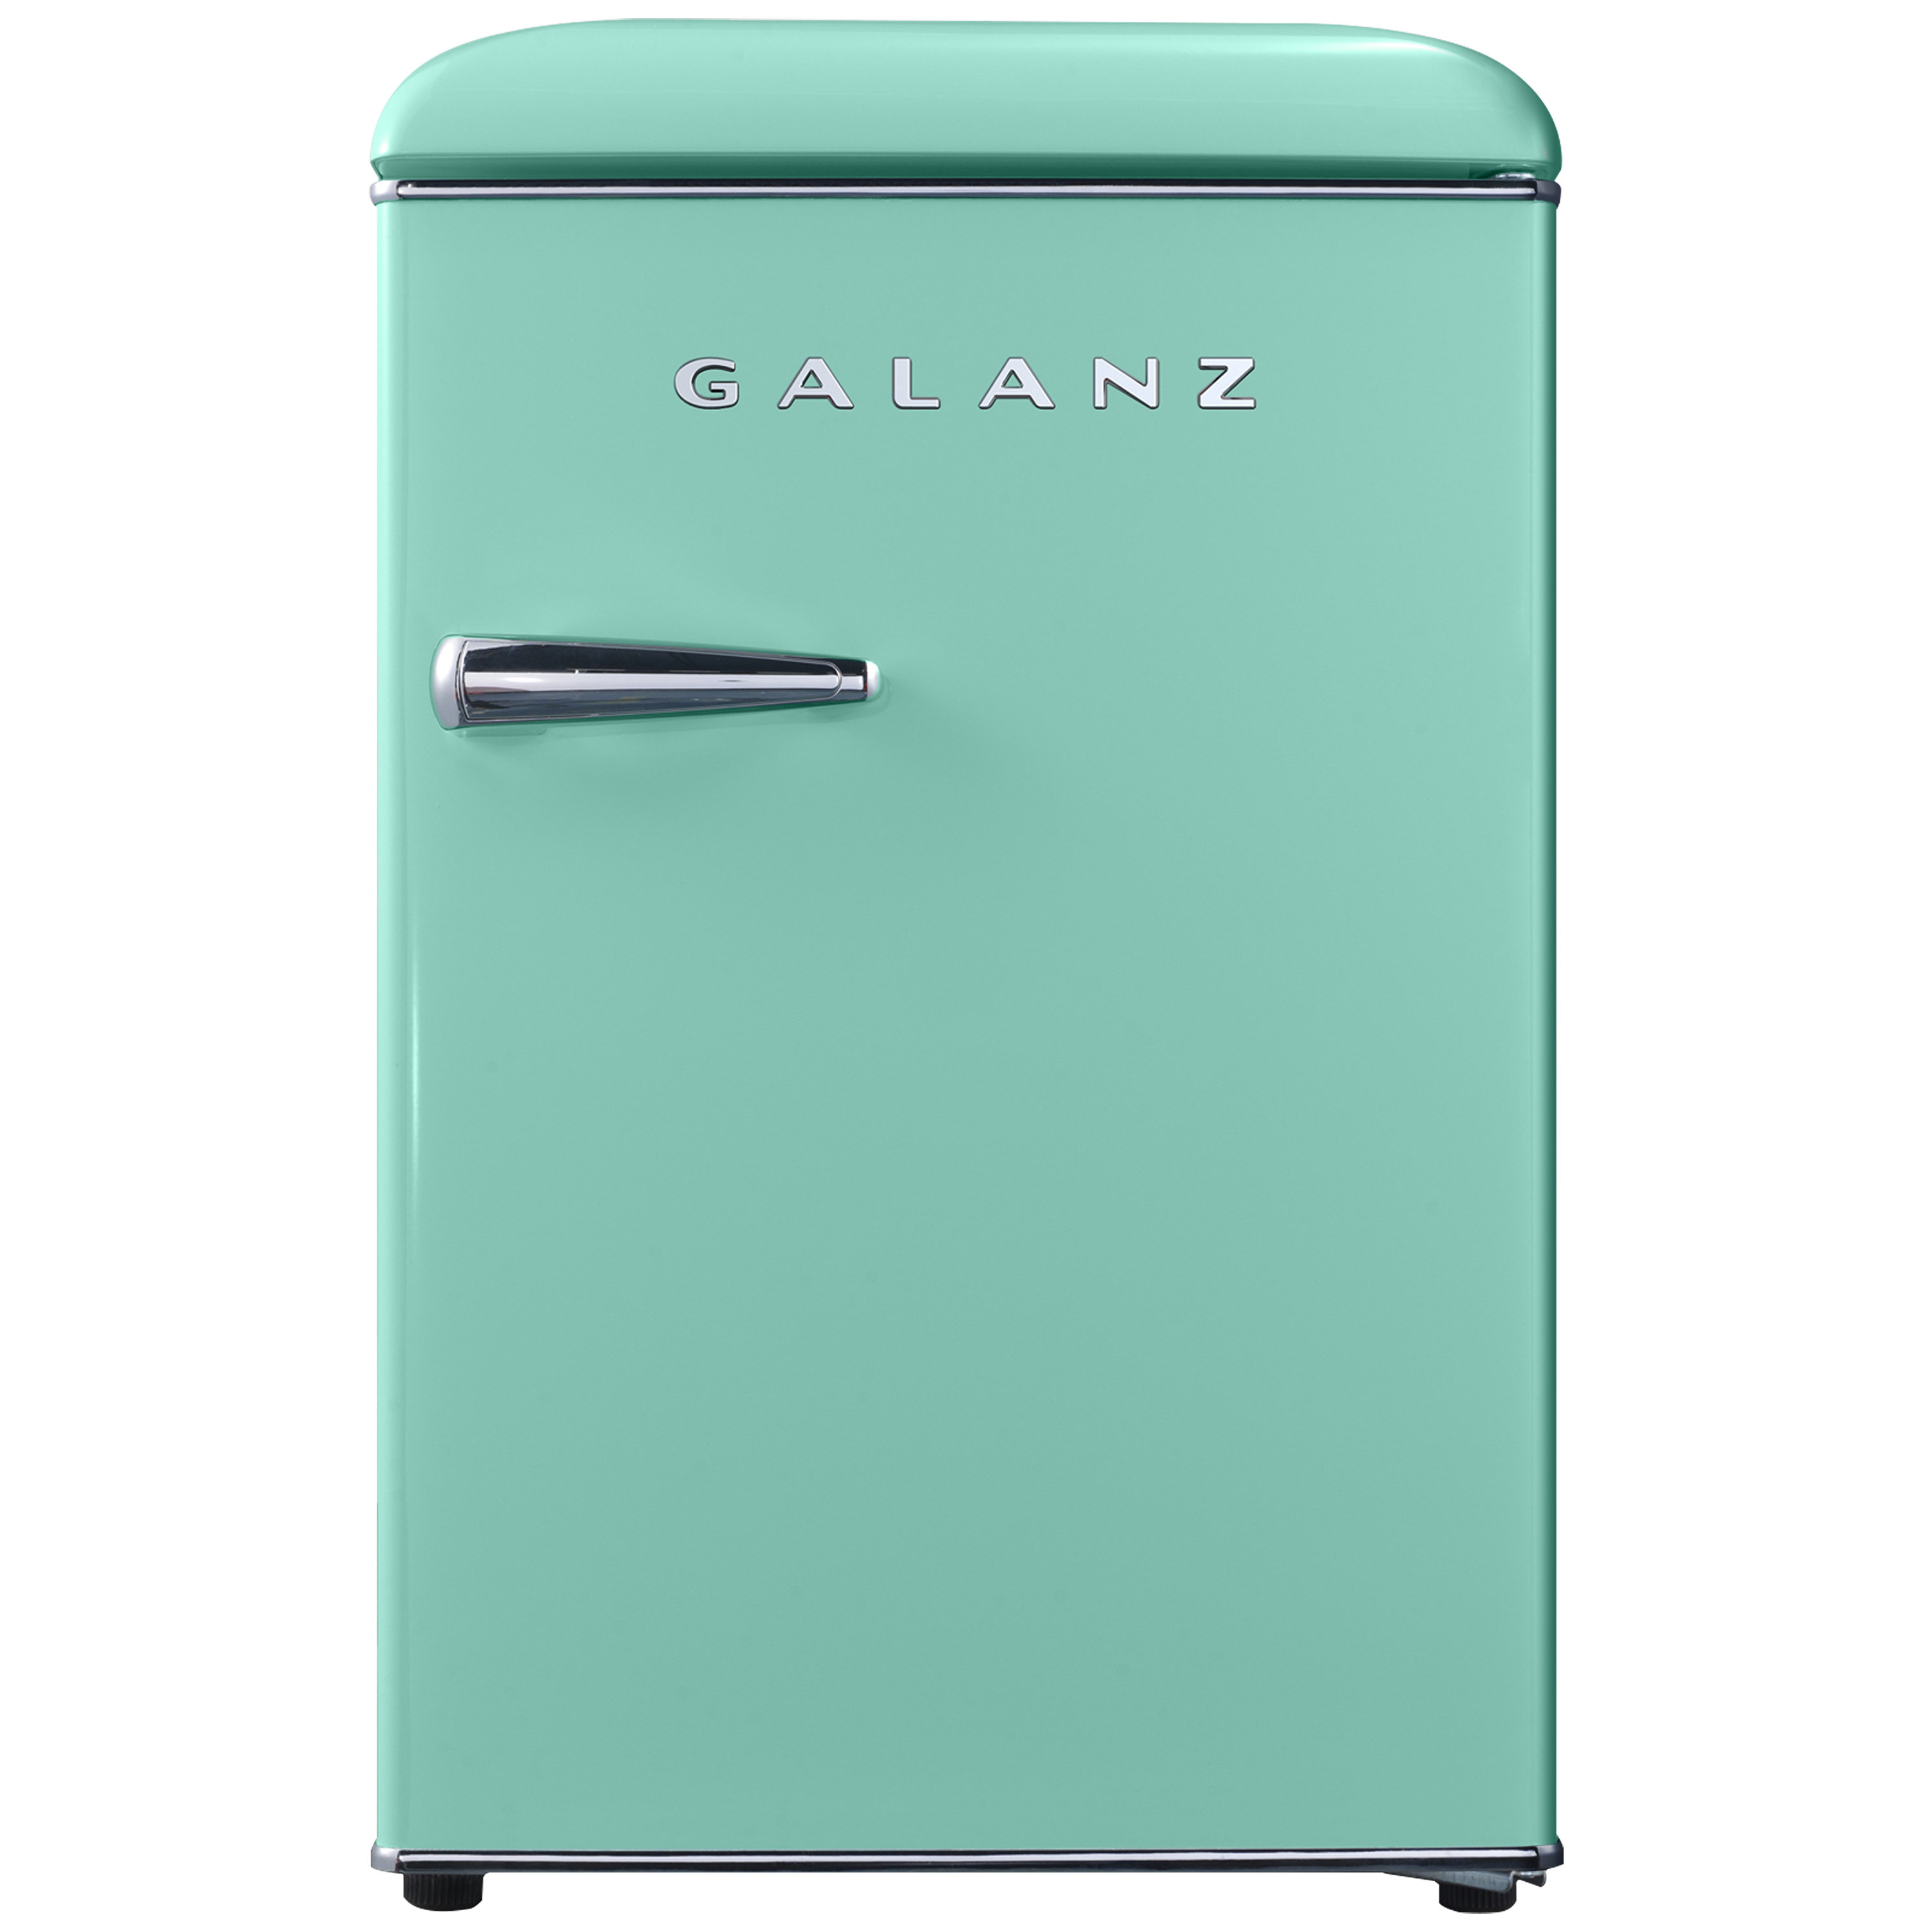 https://assets.wfcdn.com/im/25567571/compr-r85/2455/245513870/galanz-25-cubic-feet-portable-freestanding-mini-fridge-with-freezer.jpg